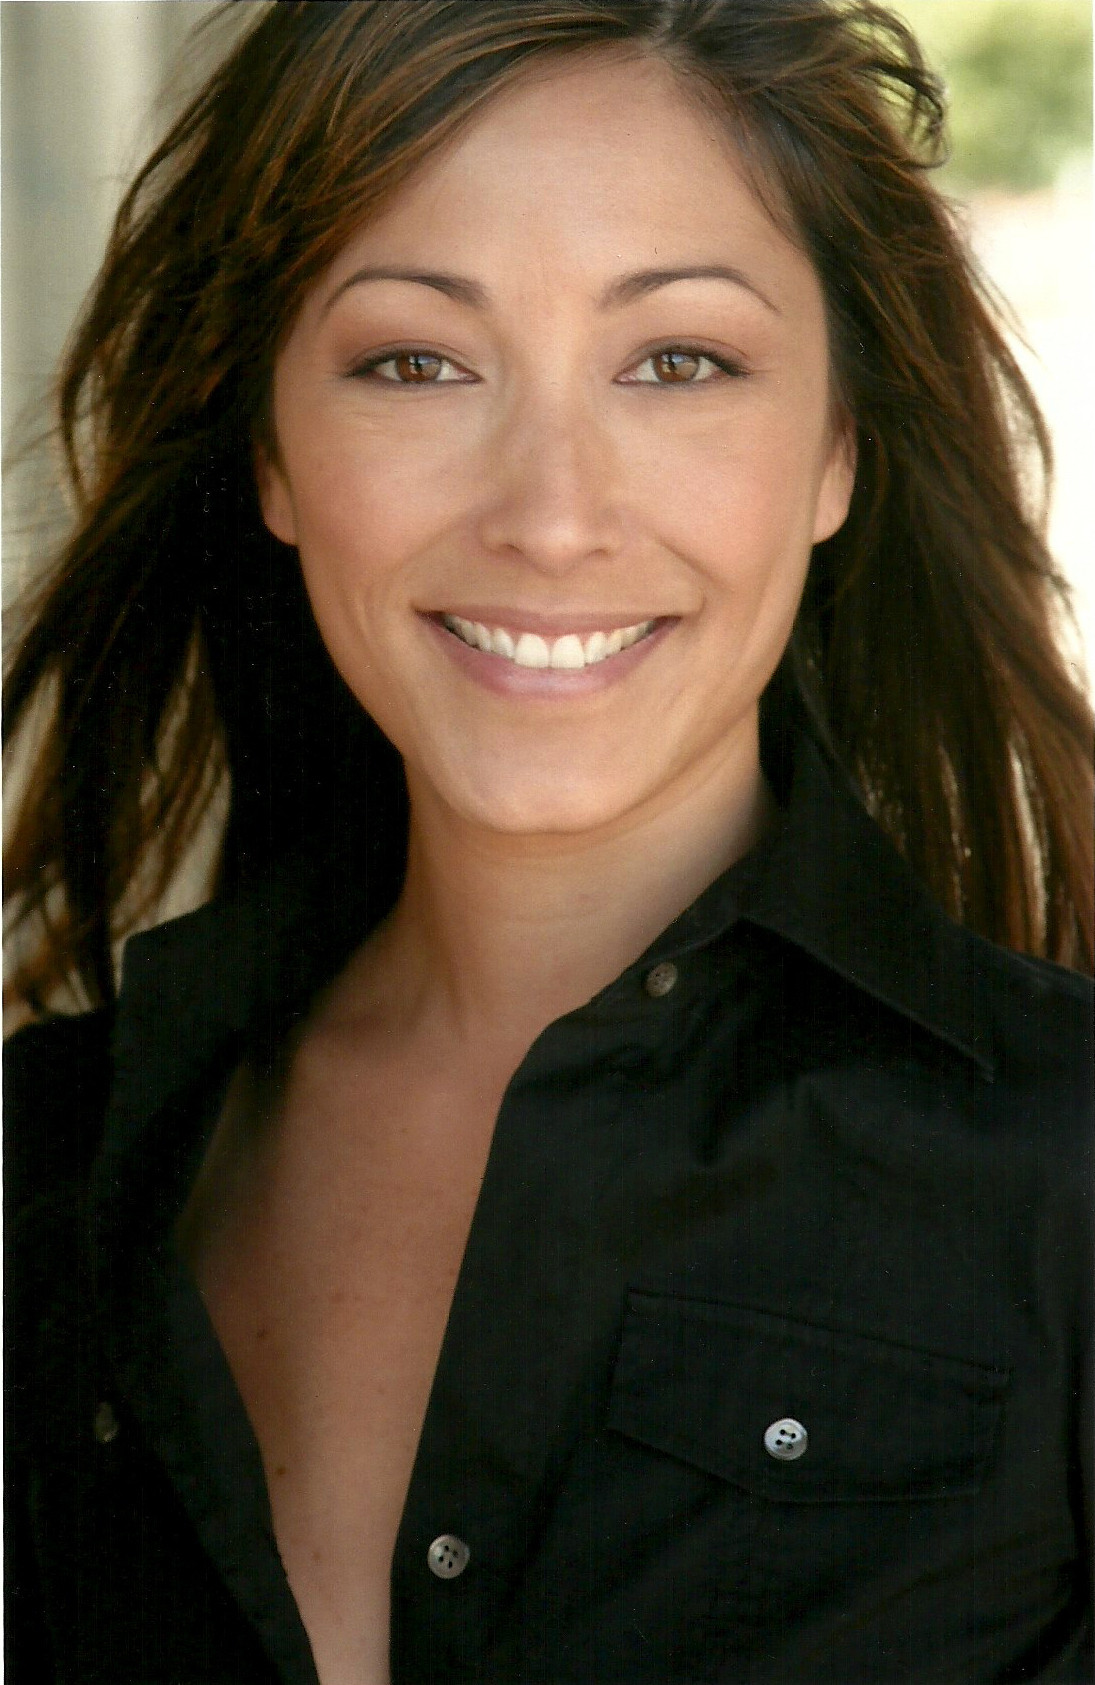 Christina Chang